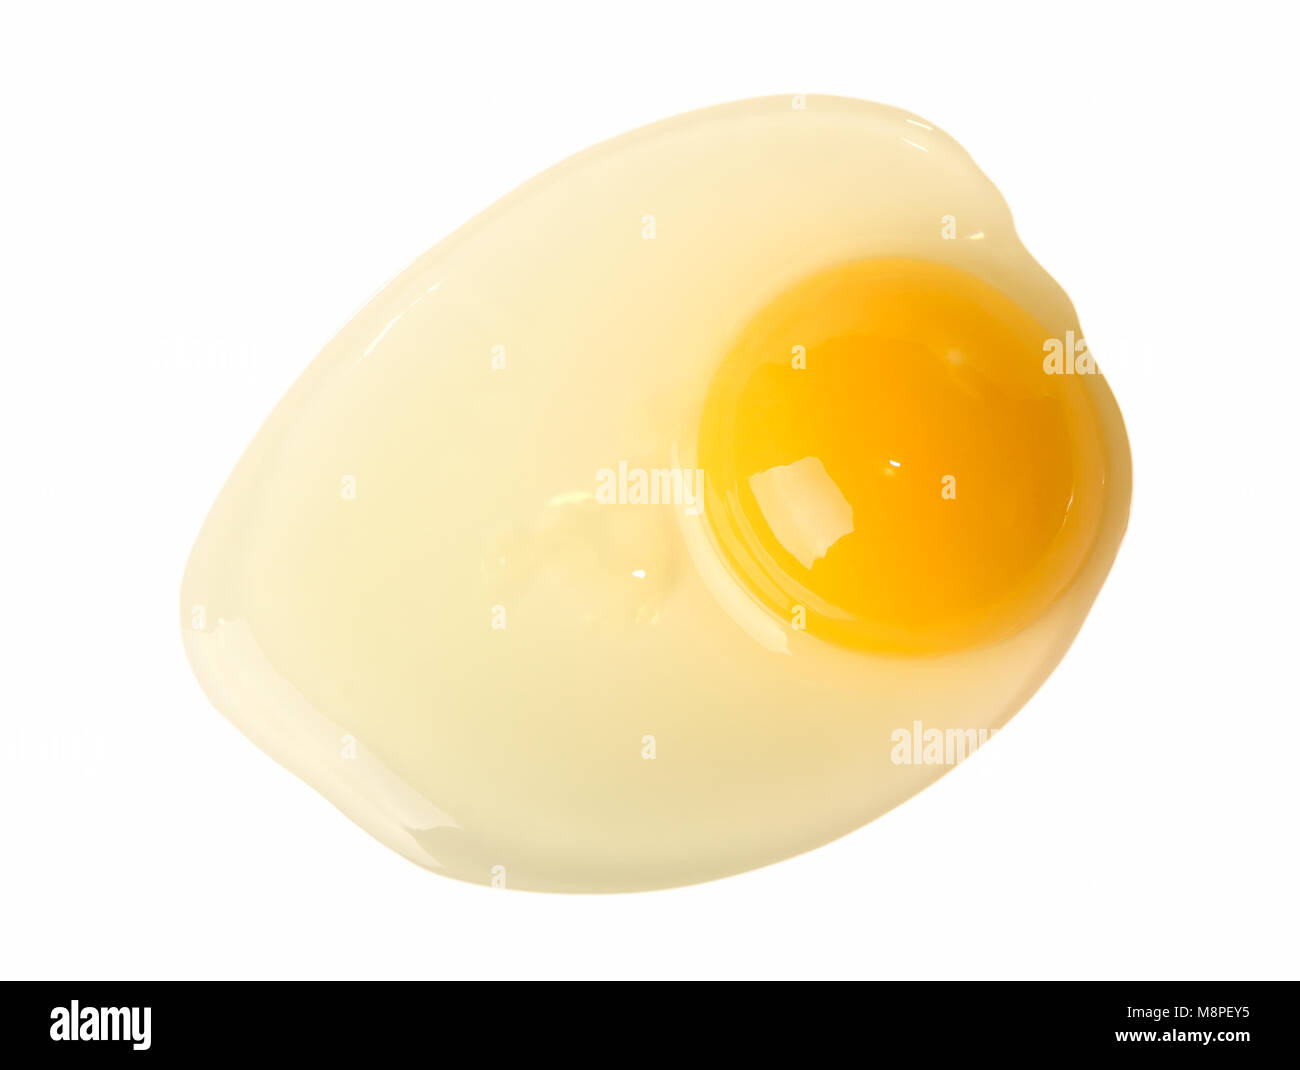 Egg yolk and egg white isolated on white background Stock Photo